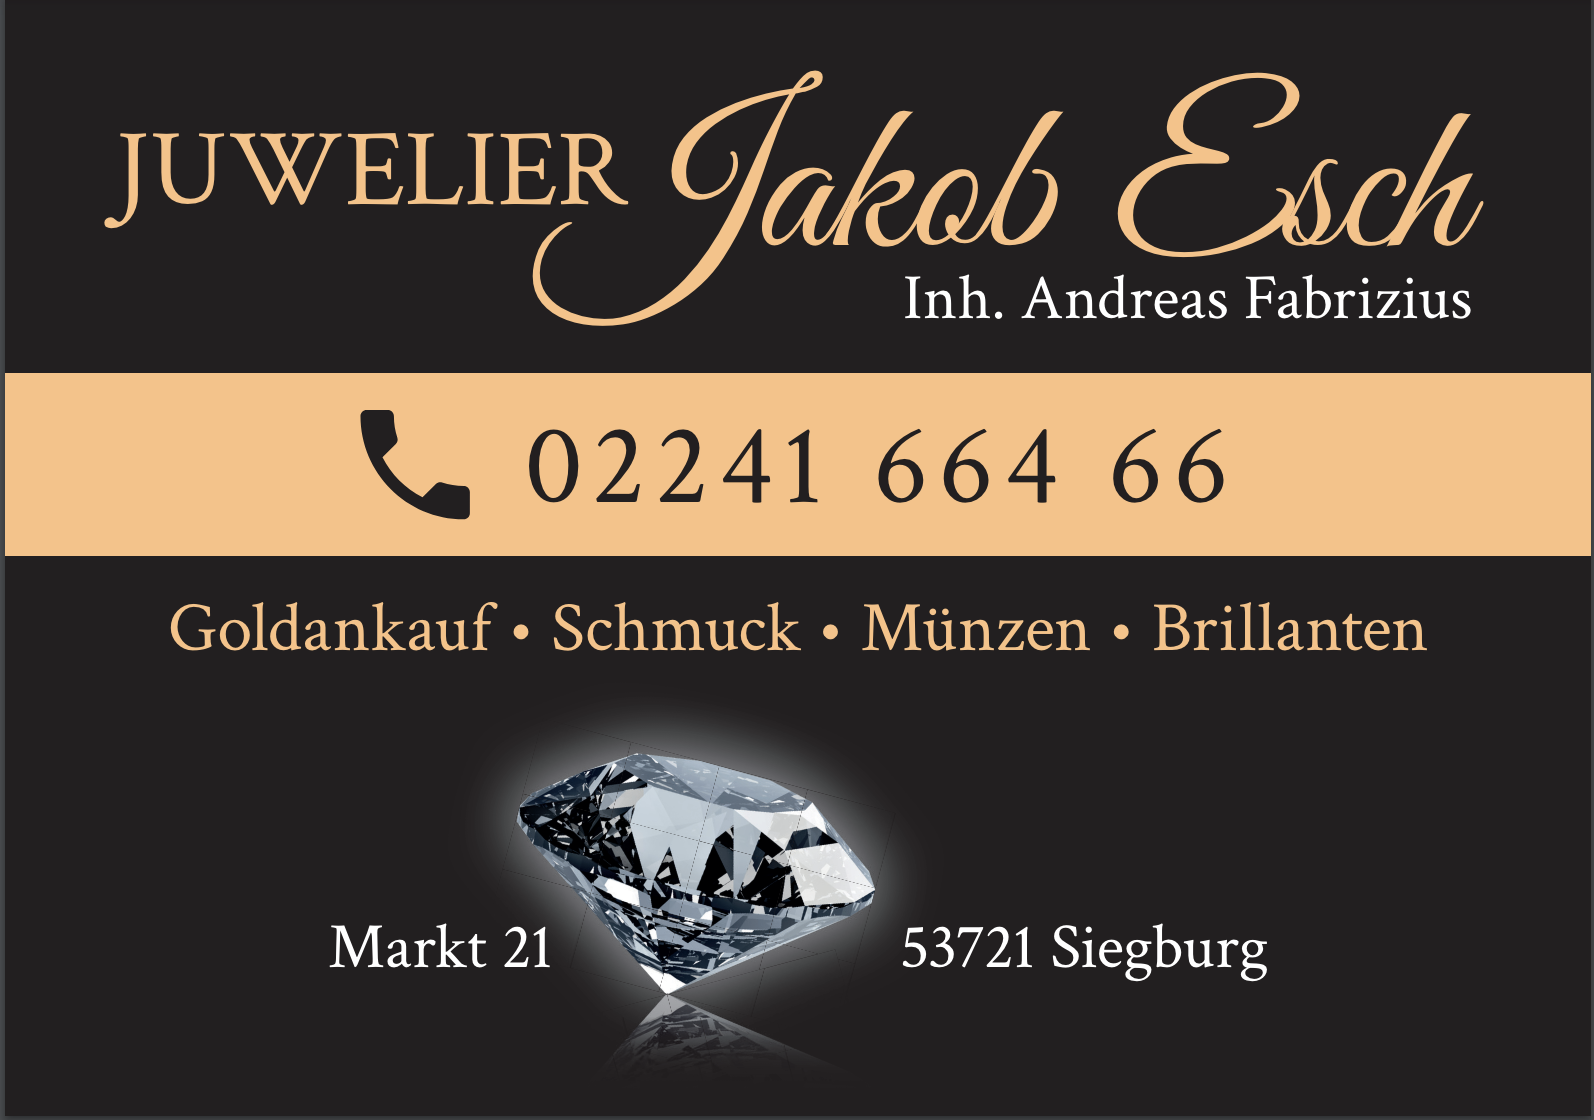 Kundenbild groß 1 Juwelier Jakob Esch Inhaber Andreas Fabrizius